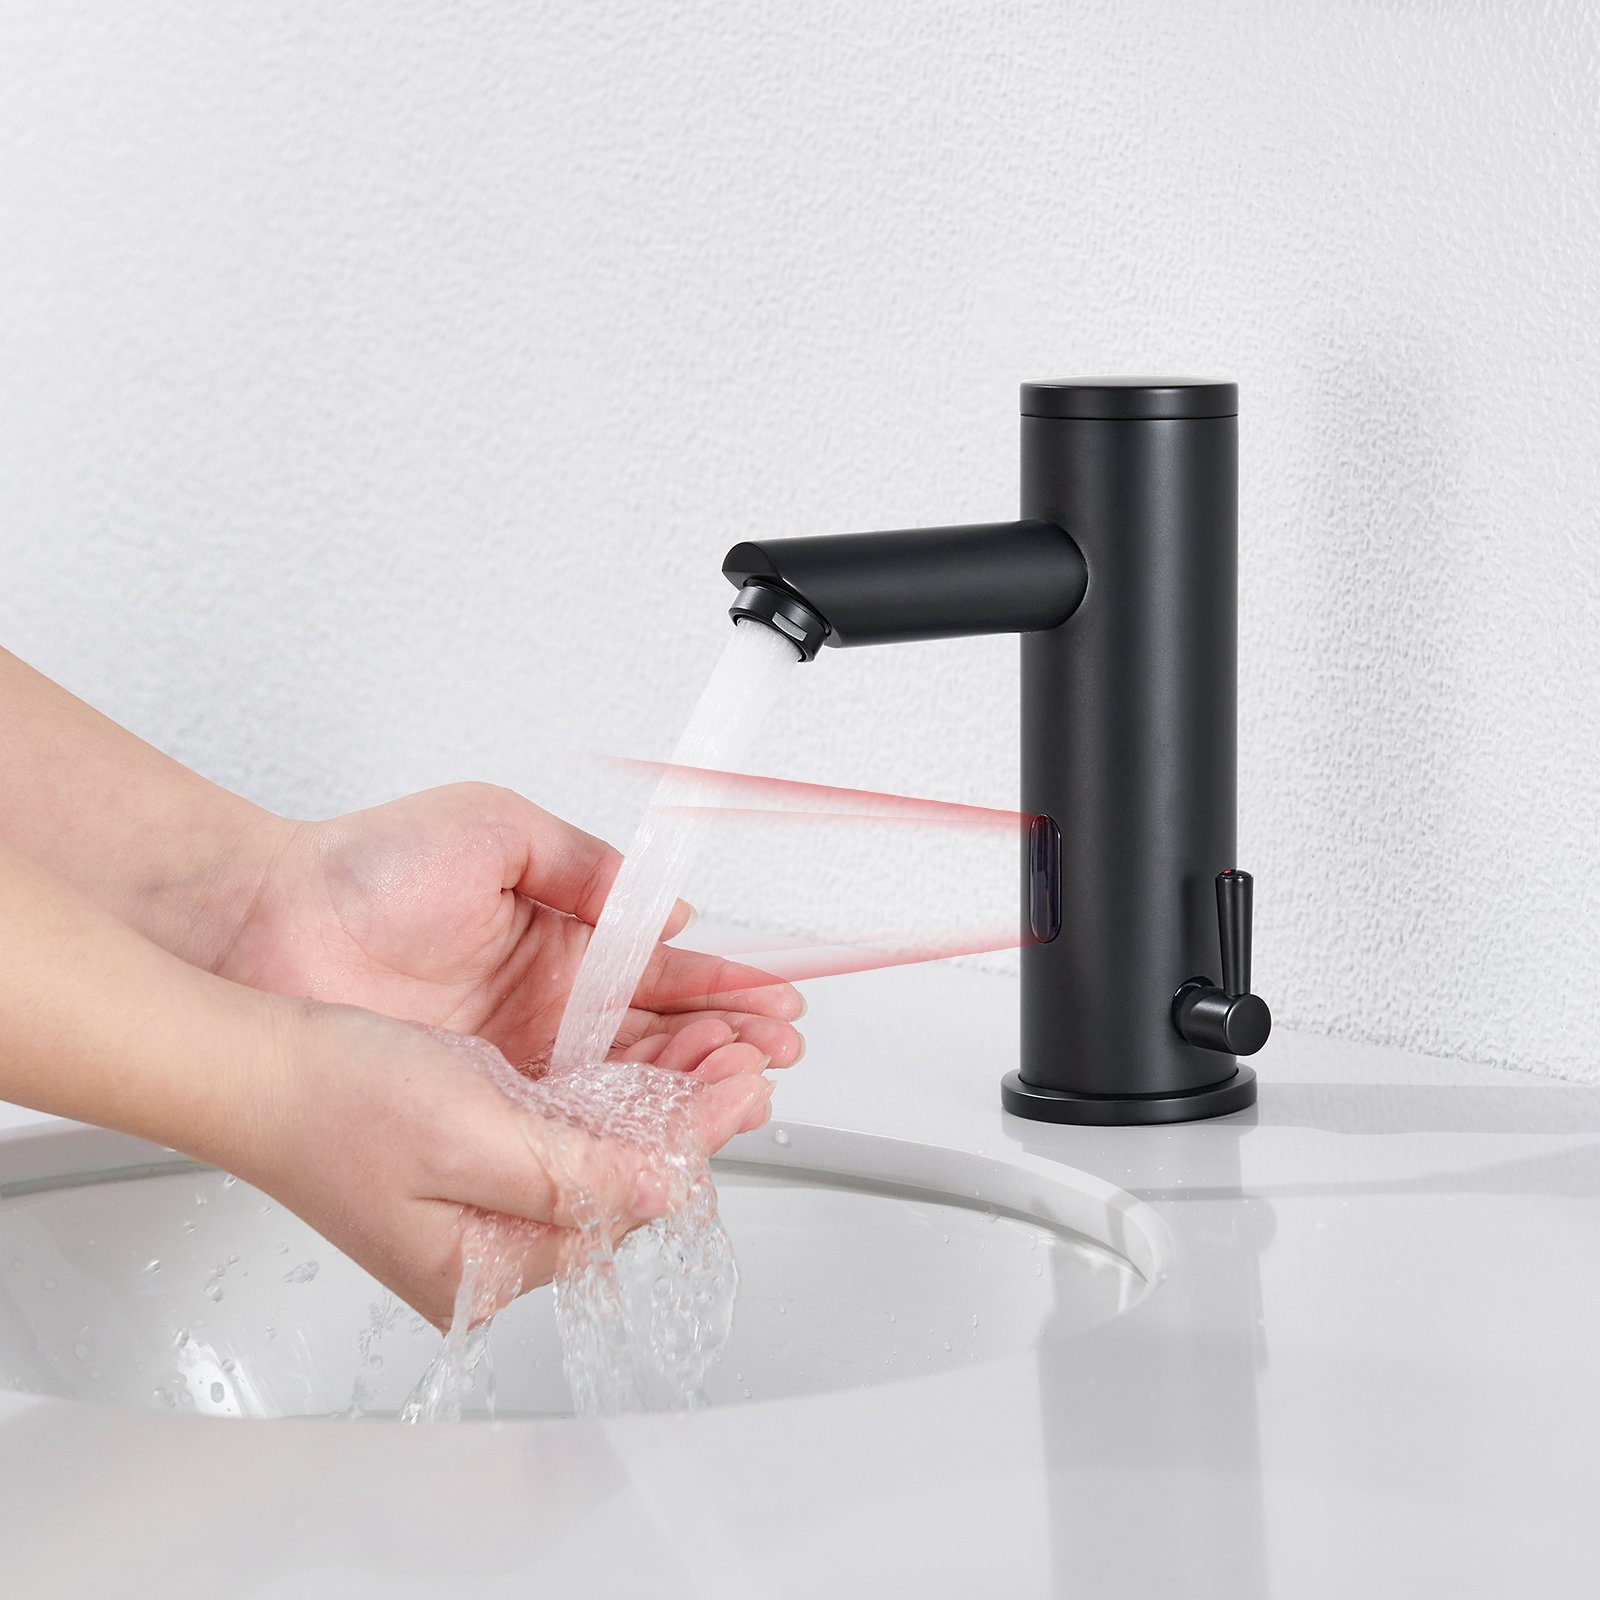 AuraLum pro Küchenarmatur Infrarot Sensor Waschtischarmatur Automatik Wasserhahn Badarmatur Mischbatterie für Badezimmer